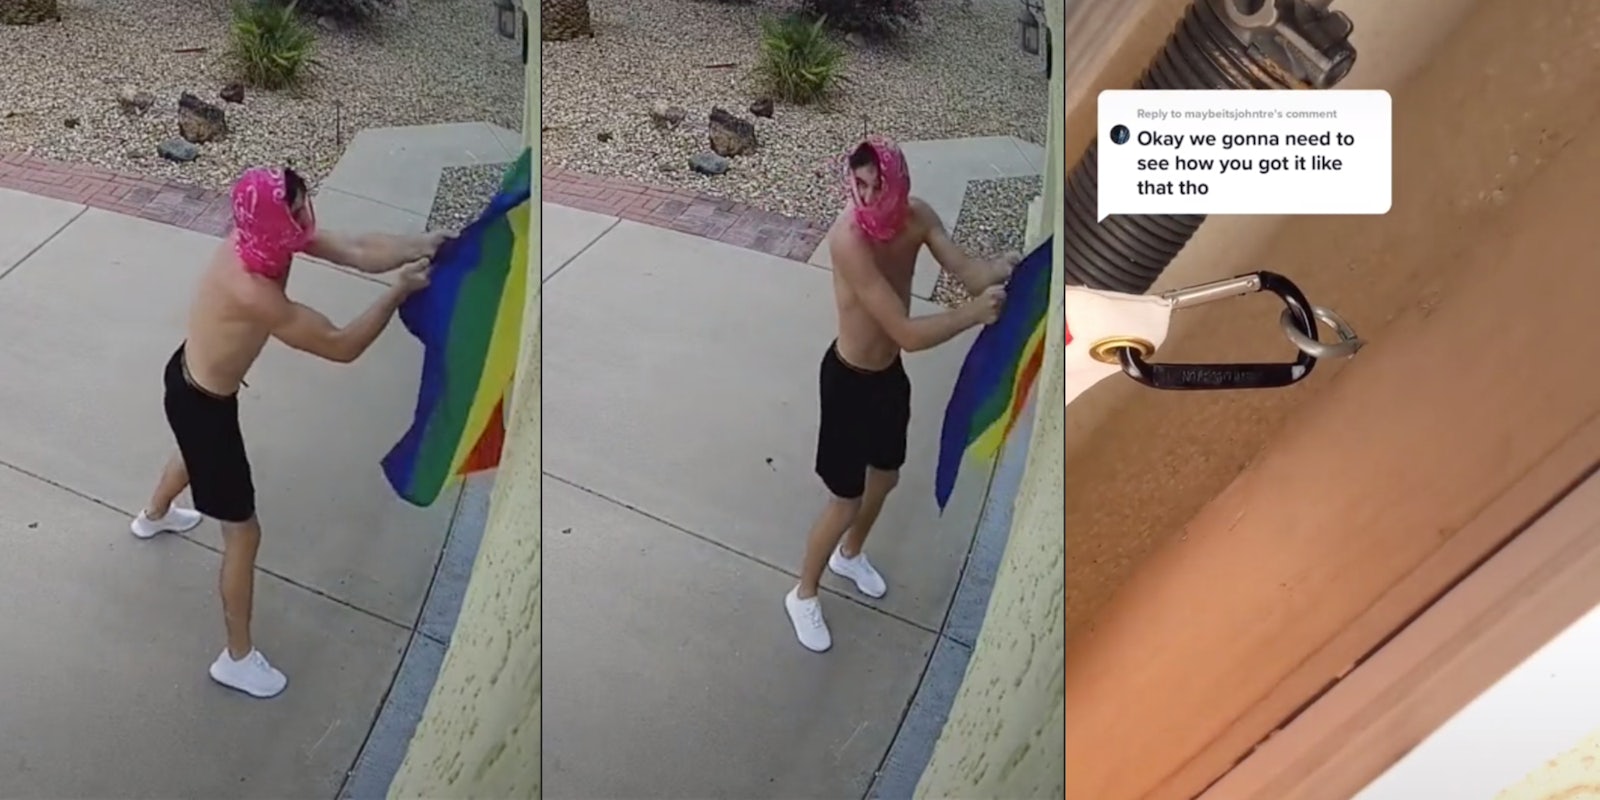 Man attempts to steal Pride flag off stranger's garage